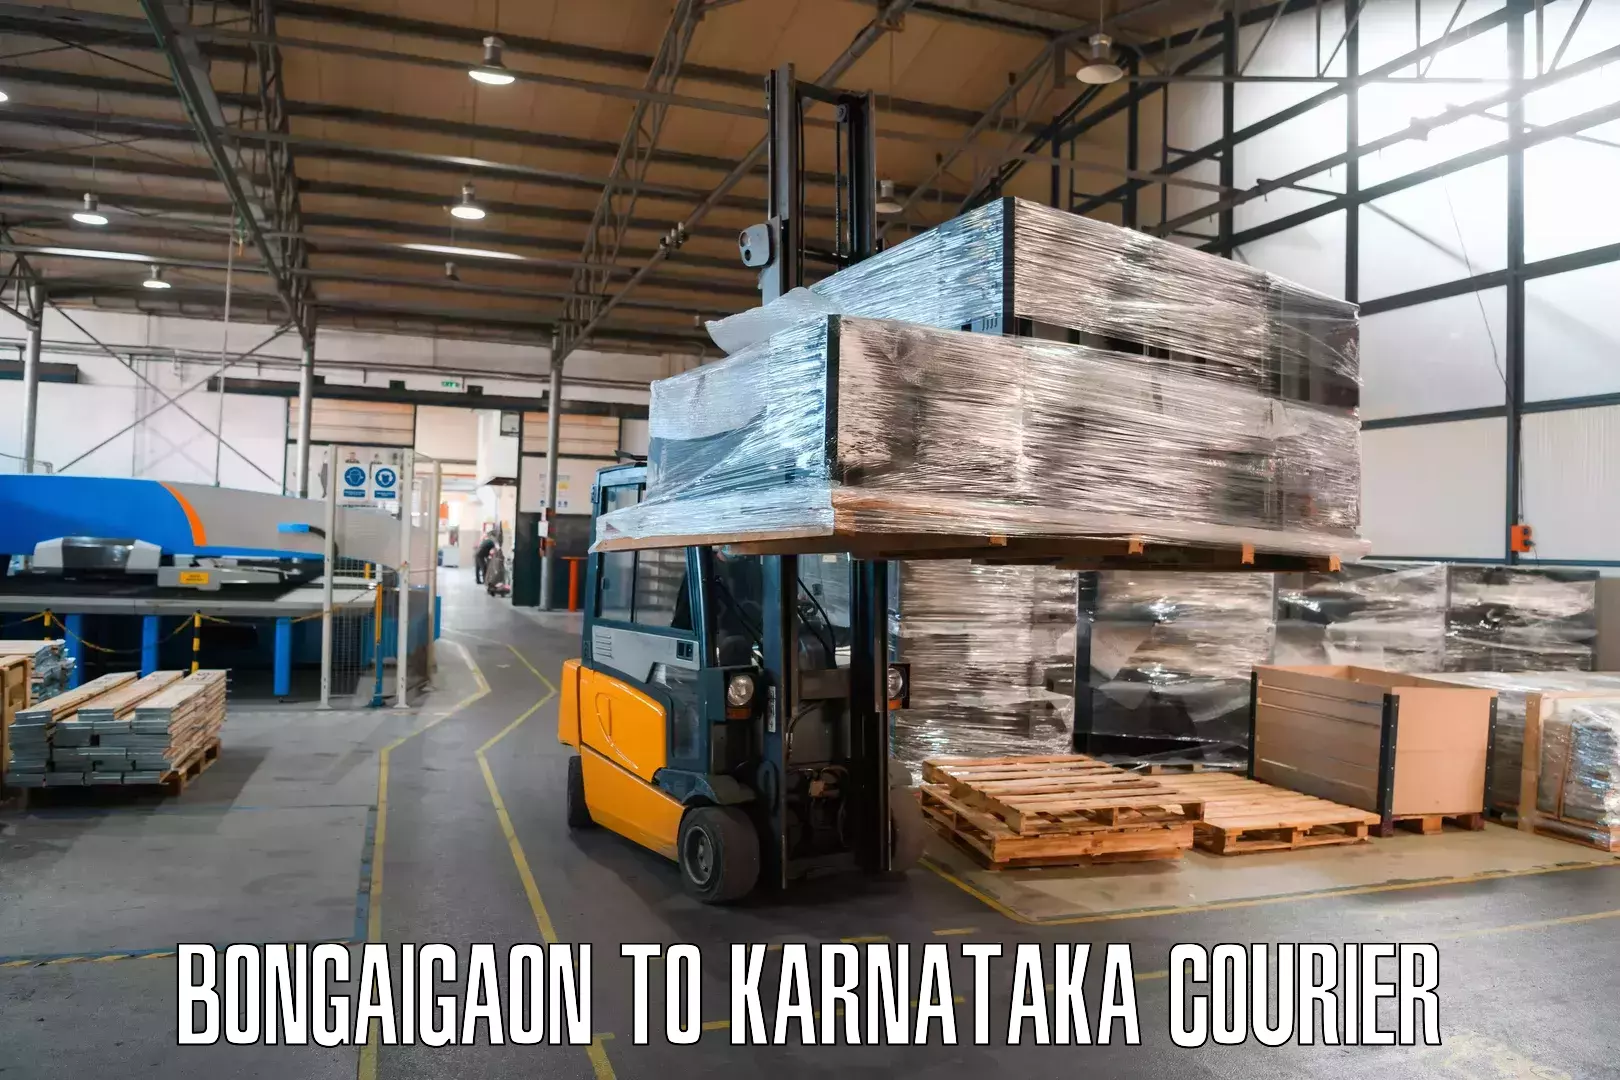 Large-scale shipping solutions Bongaigaon to Mundgod